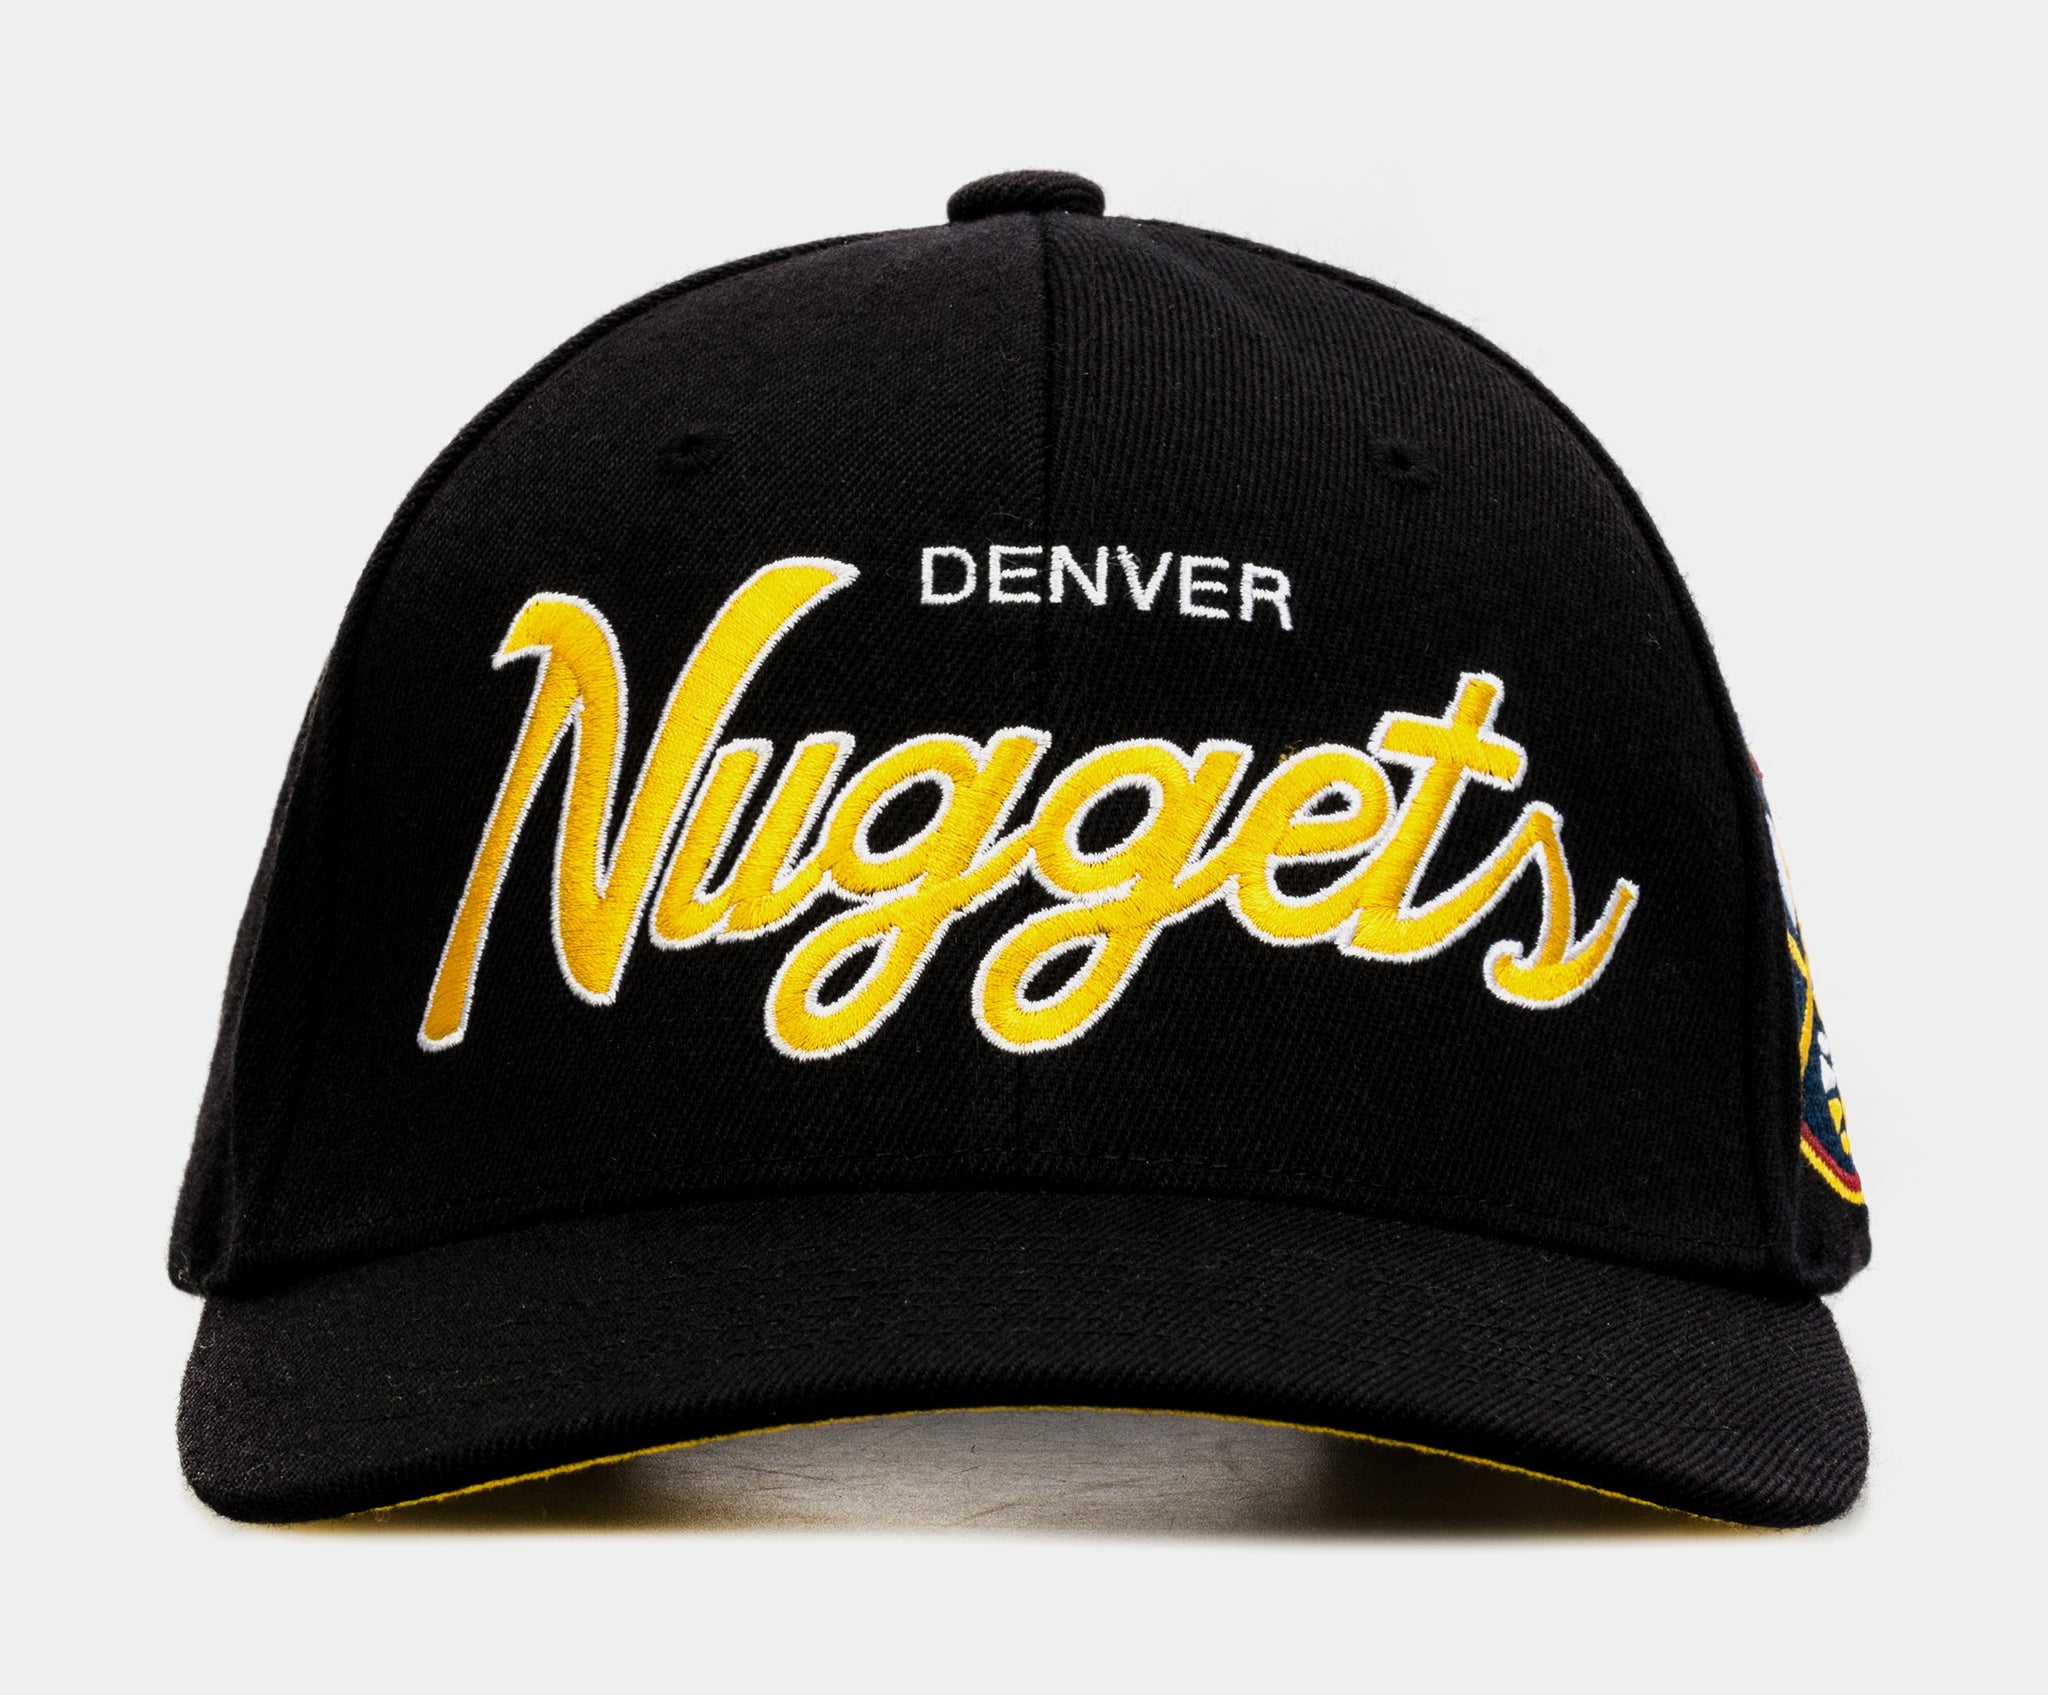 Denver Nuggets Hats in Denver Nuggets Team Shop 